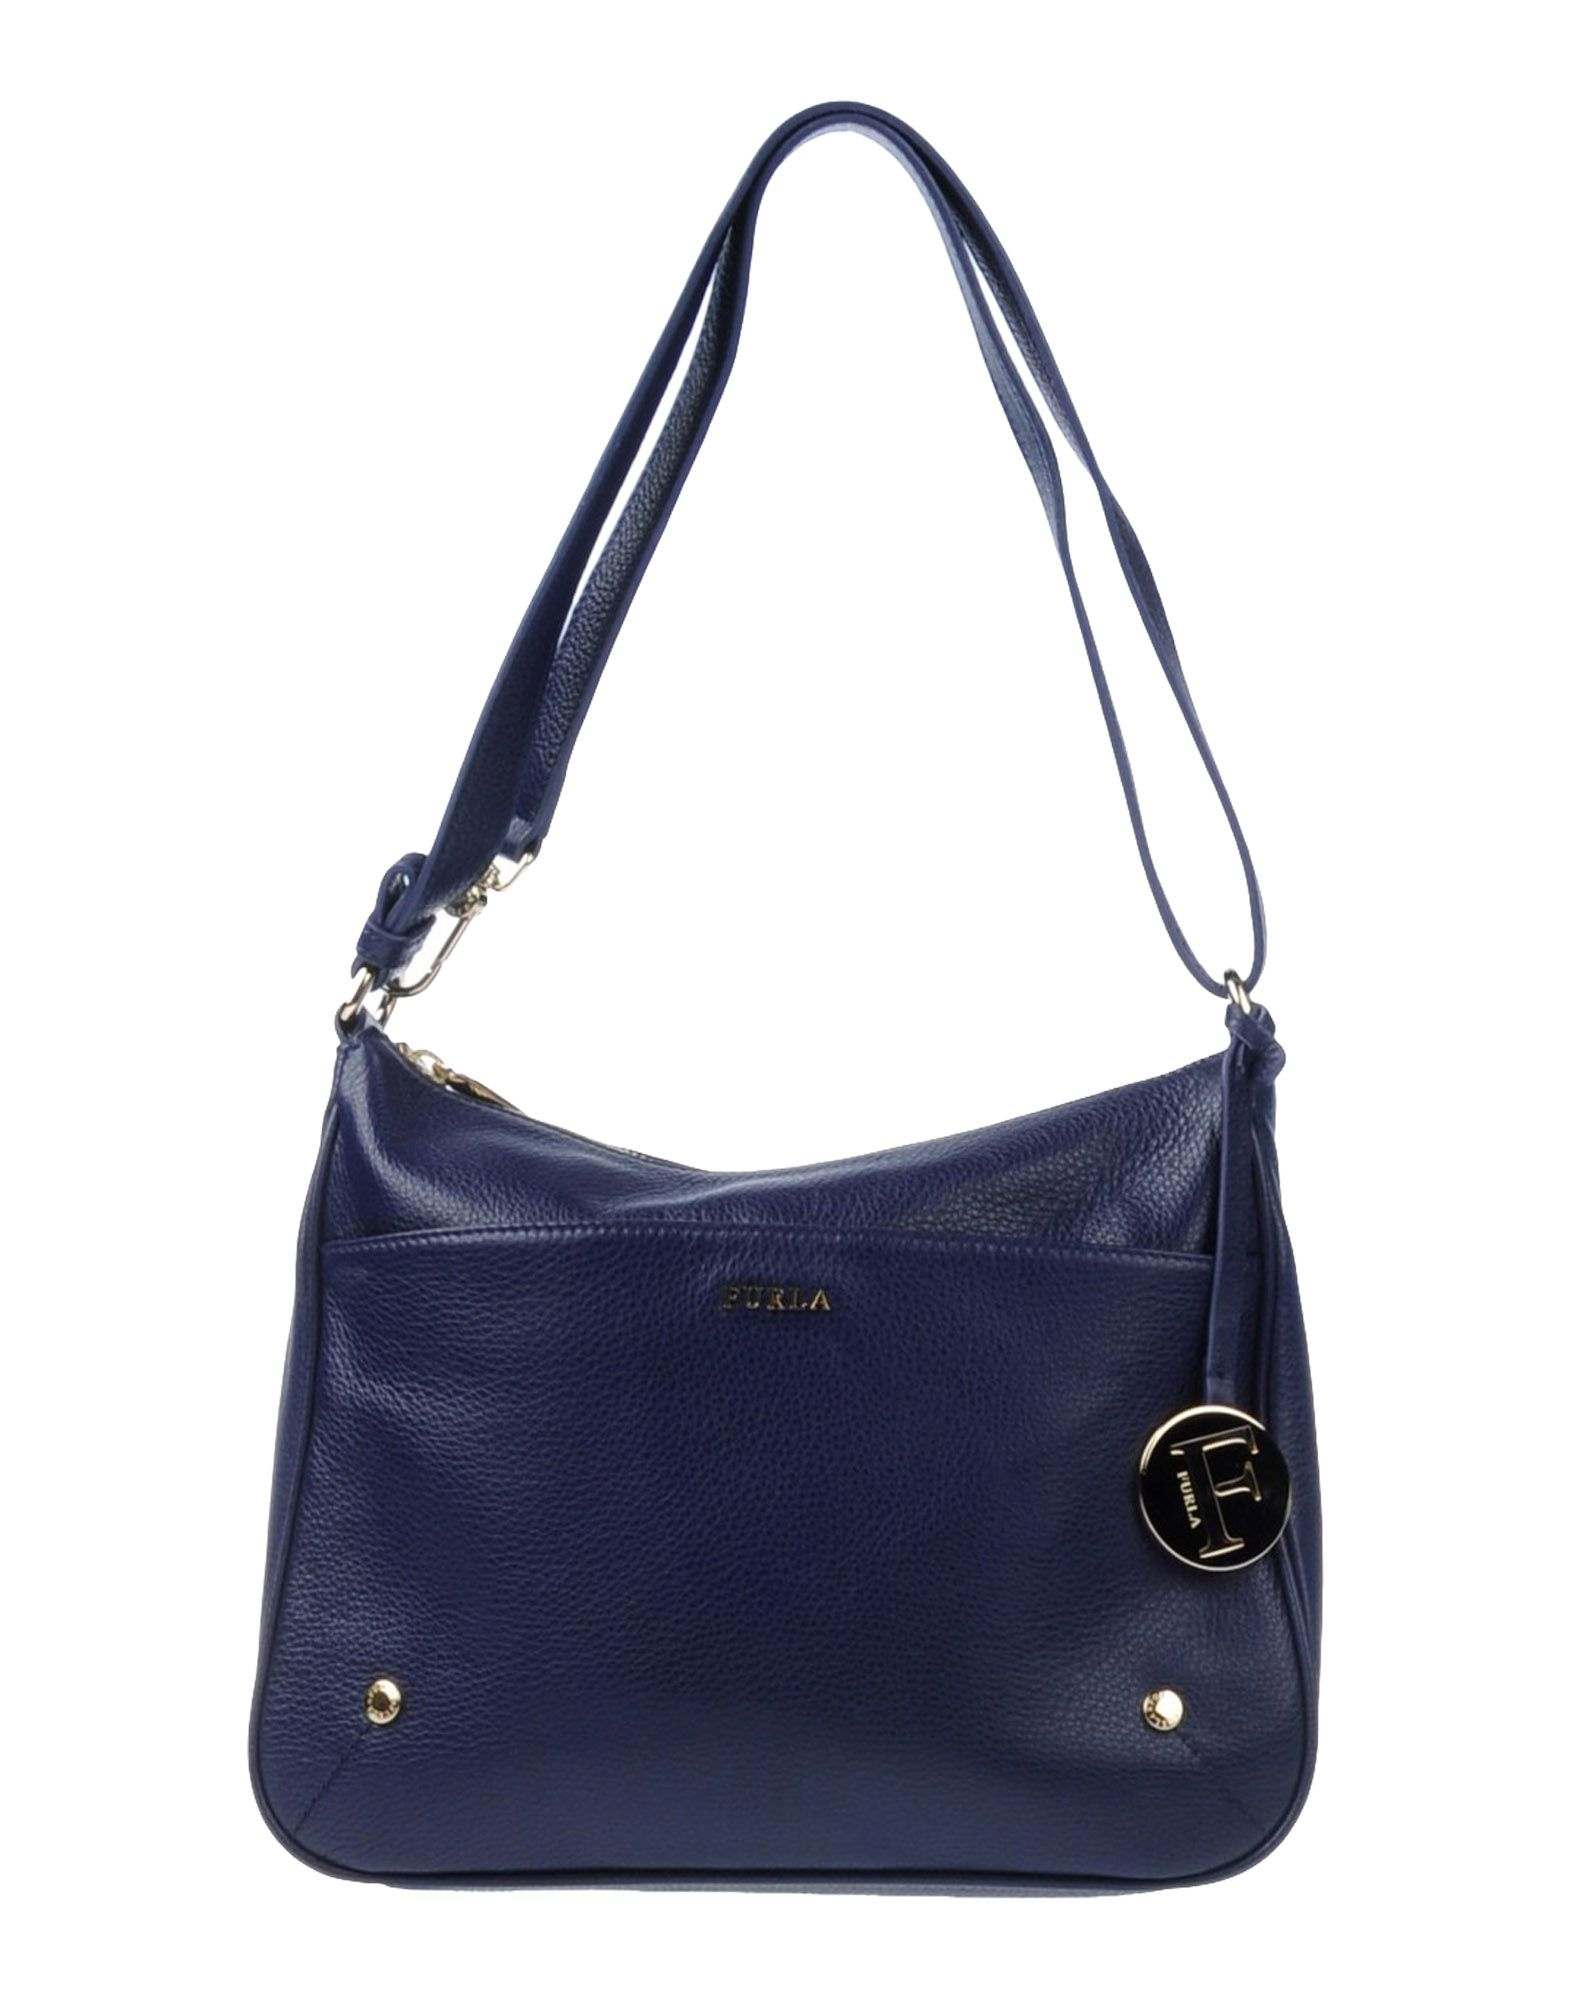 Lyst - Furla Handbag in Blue